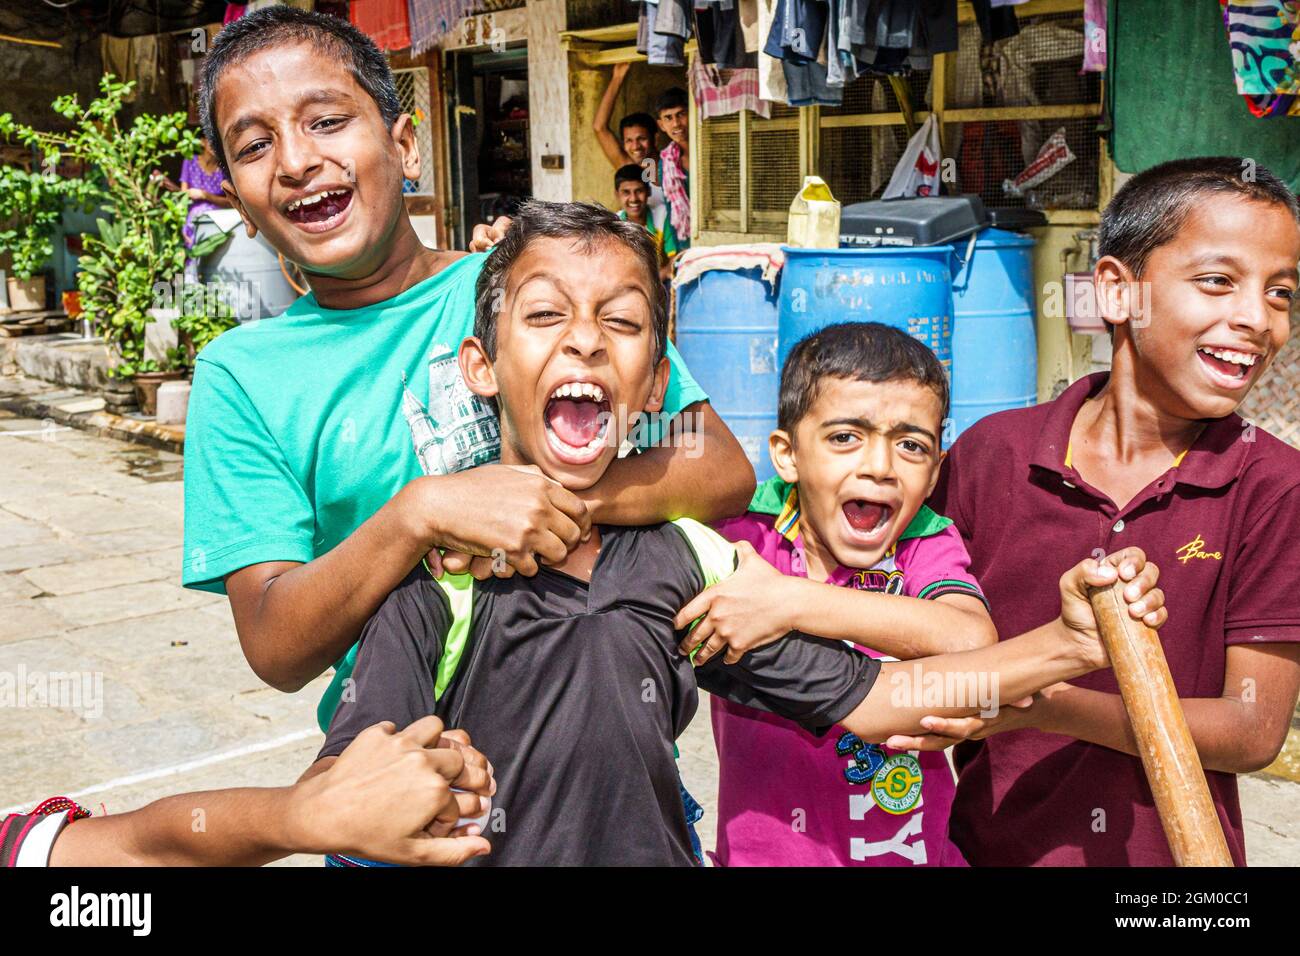 Mumbai Indien, Lower Parel, asiatische indische Jungen Kinder Kinder Freunde spielen, Hari BAUG Box Cricket League Innenstadt jubeln aufgeregt Teamkollegen brüllen Stockfoto